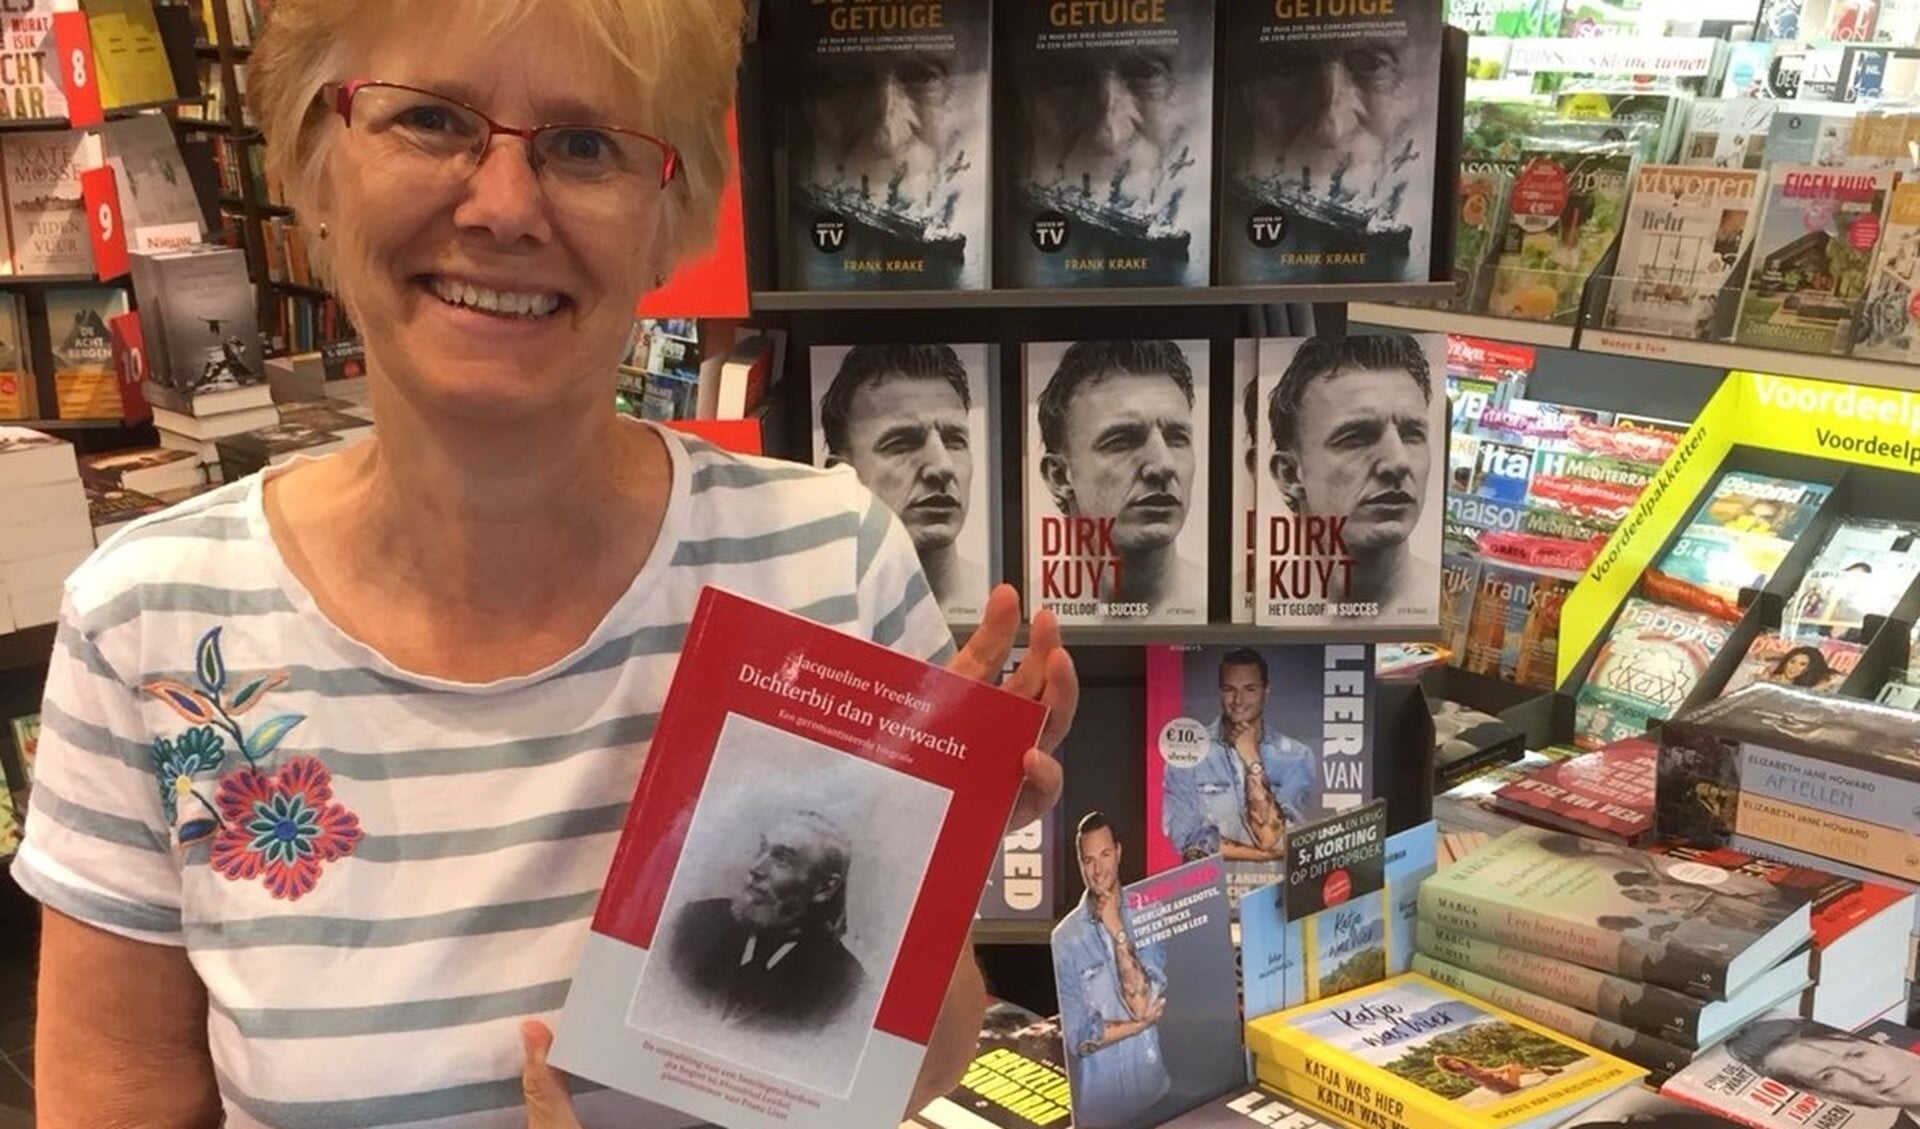 Jacqueline Vreeken met haar boek in Bruna in Diemen.